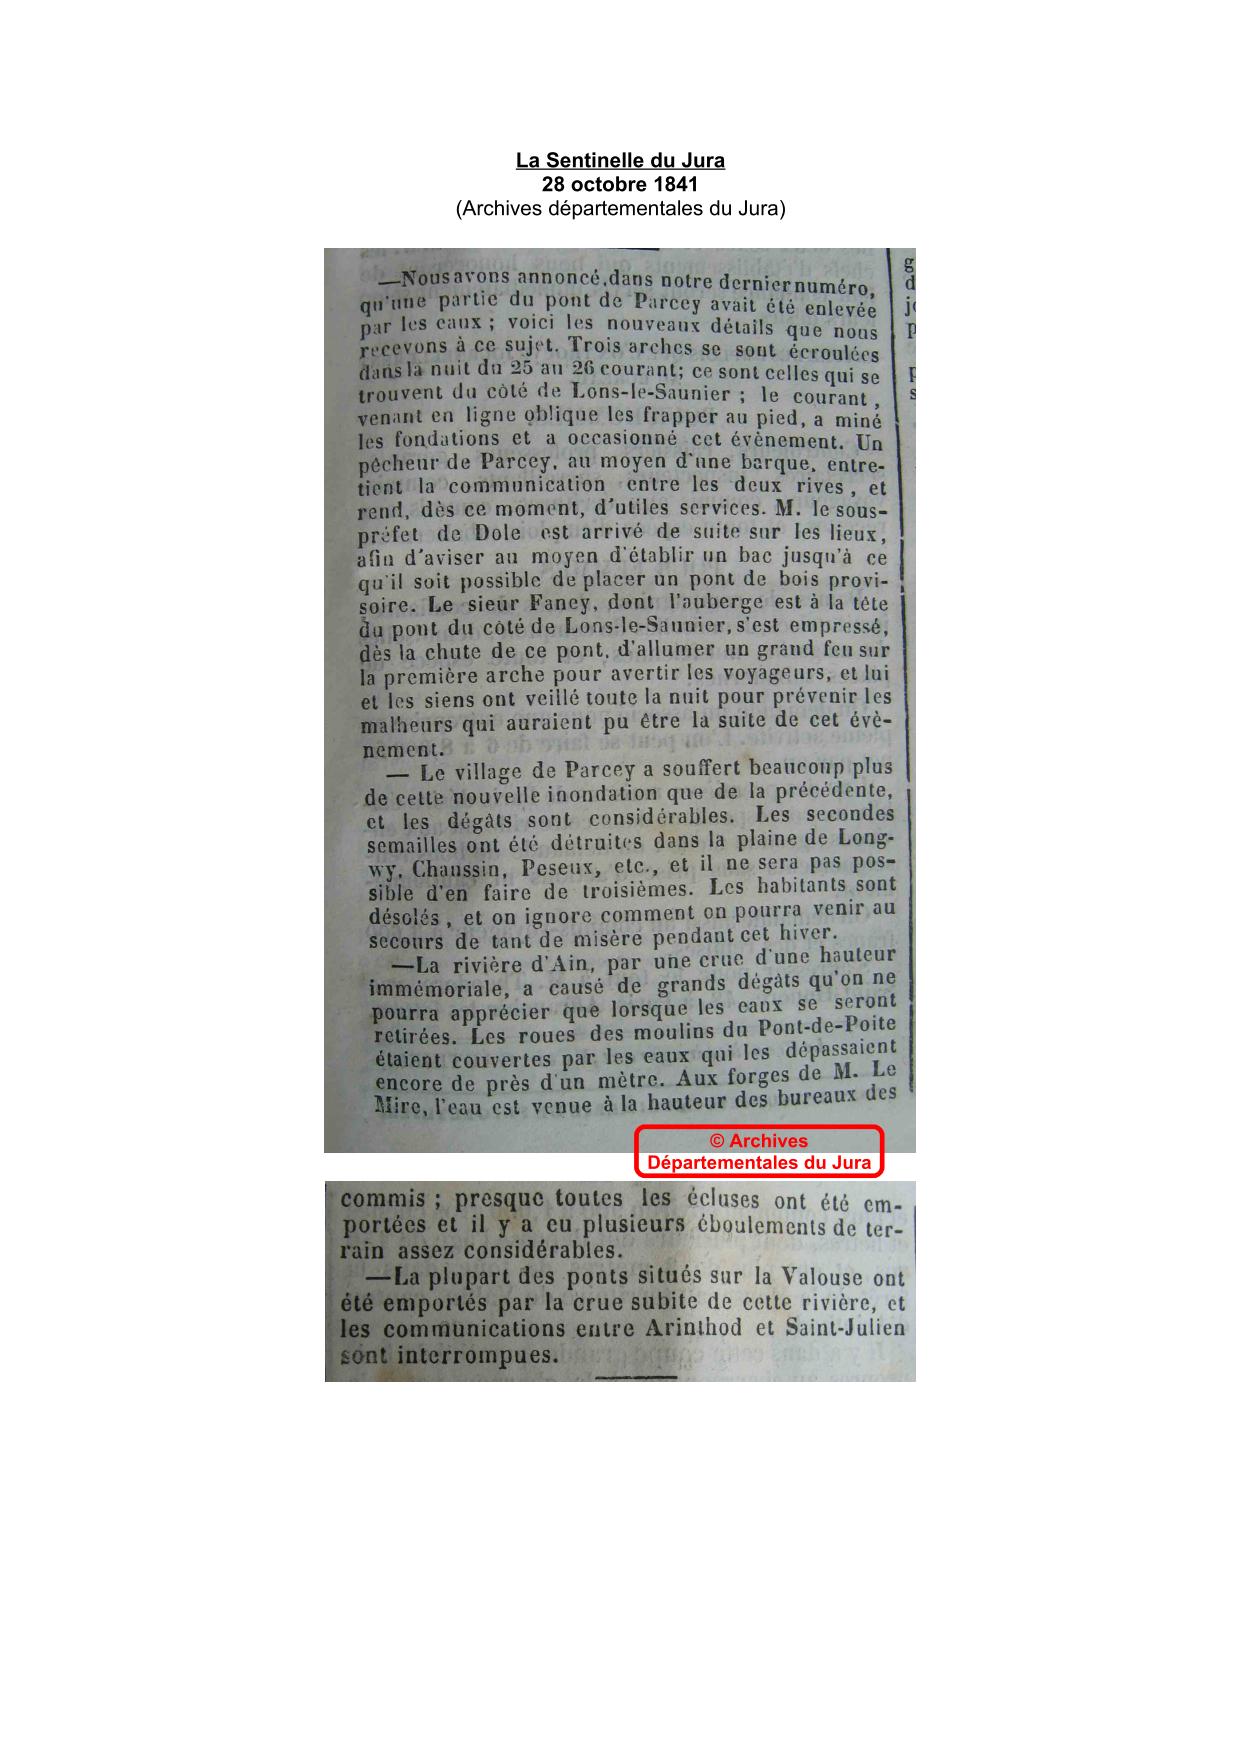 Journal - La Sentinelle du Jura - 1841 - Région de Parcey